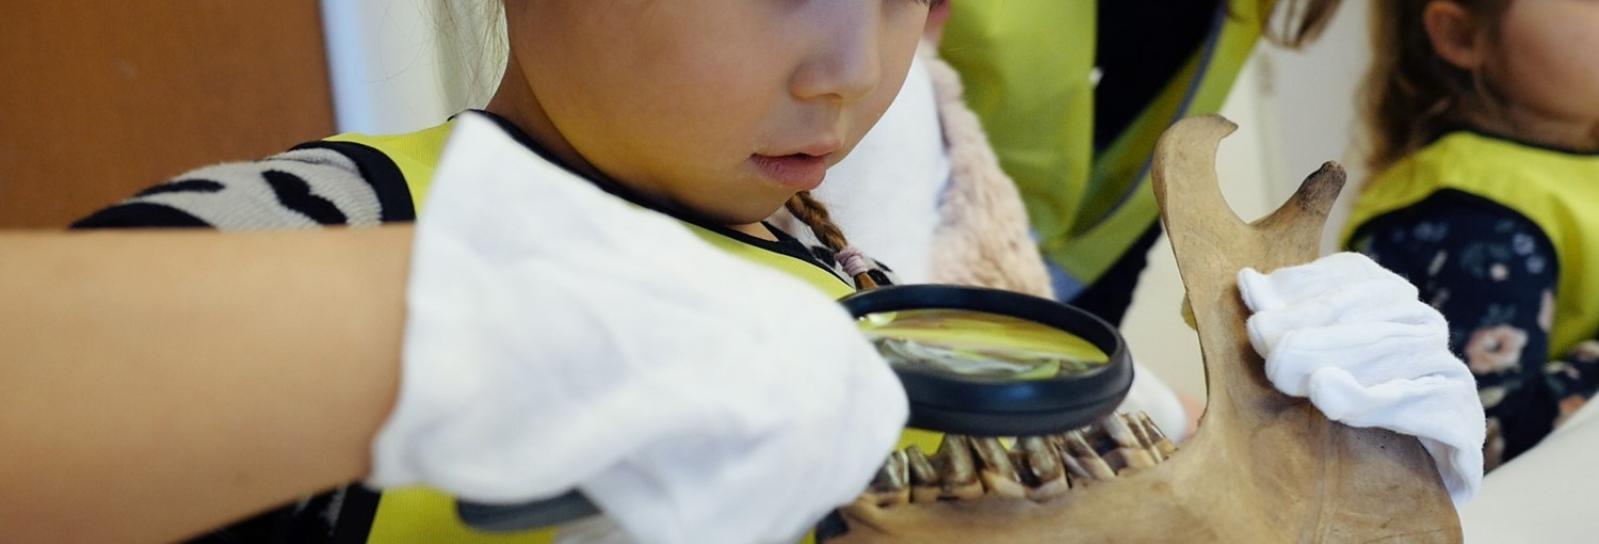 Barn undersøger arkæologisk fund med lup